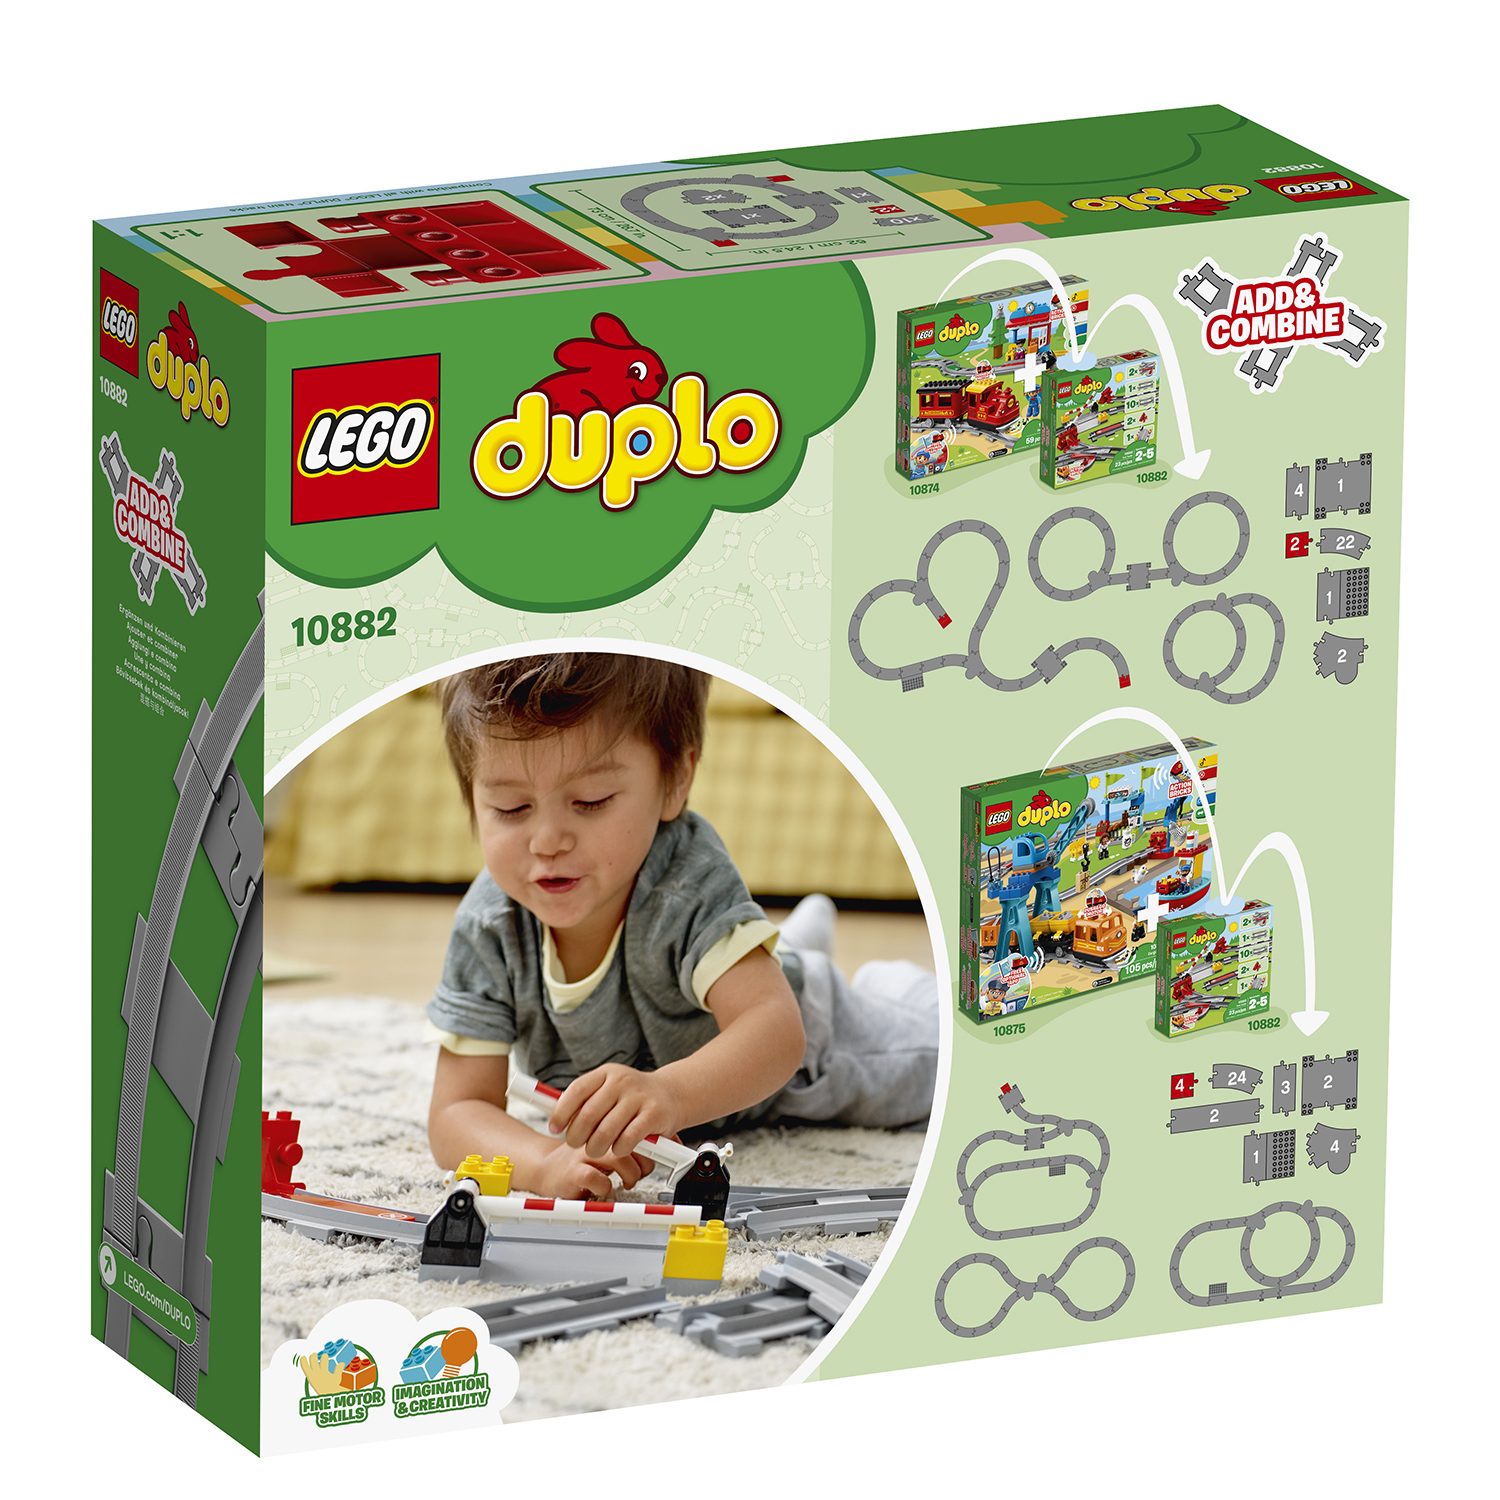 Lego duplo 10882 binari ferroviari, giochi per bambini in età prescolare con mattoncino sonoro, giocattoli educativi - LEGO DUPLO, Lego